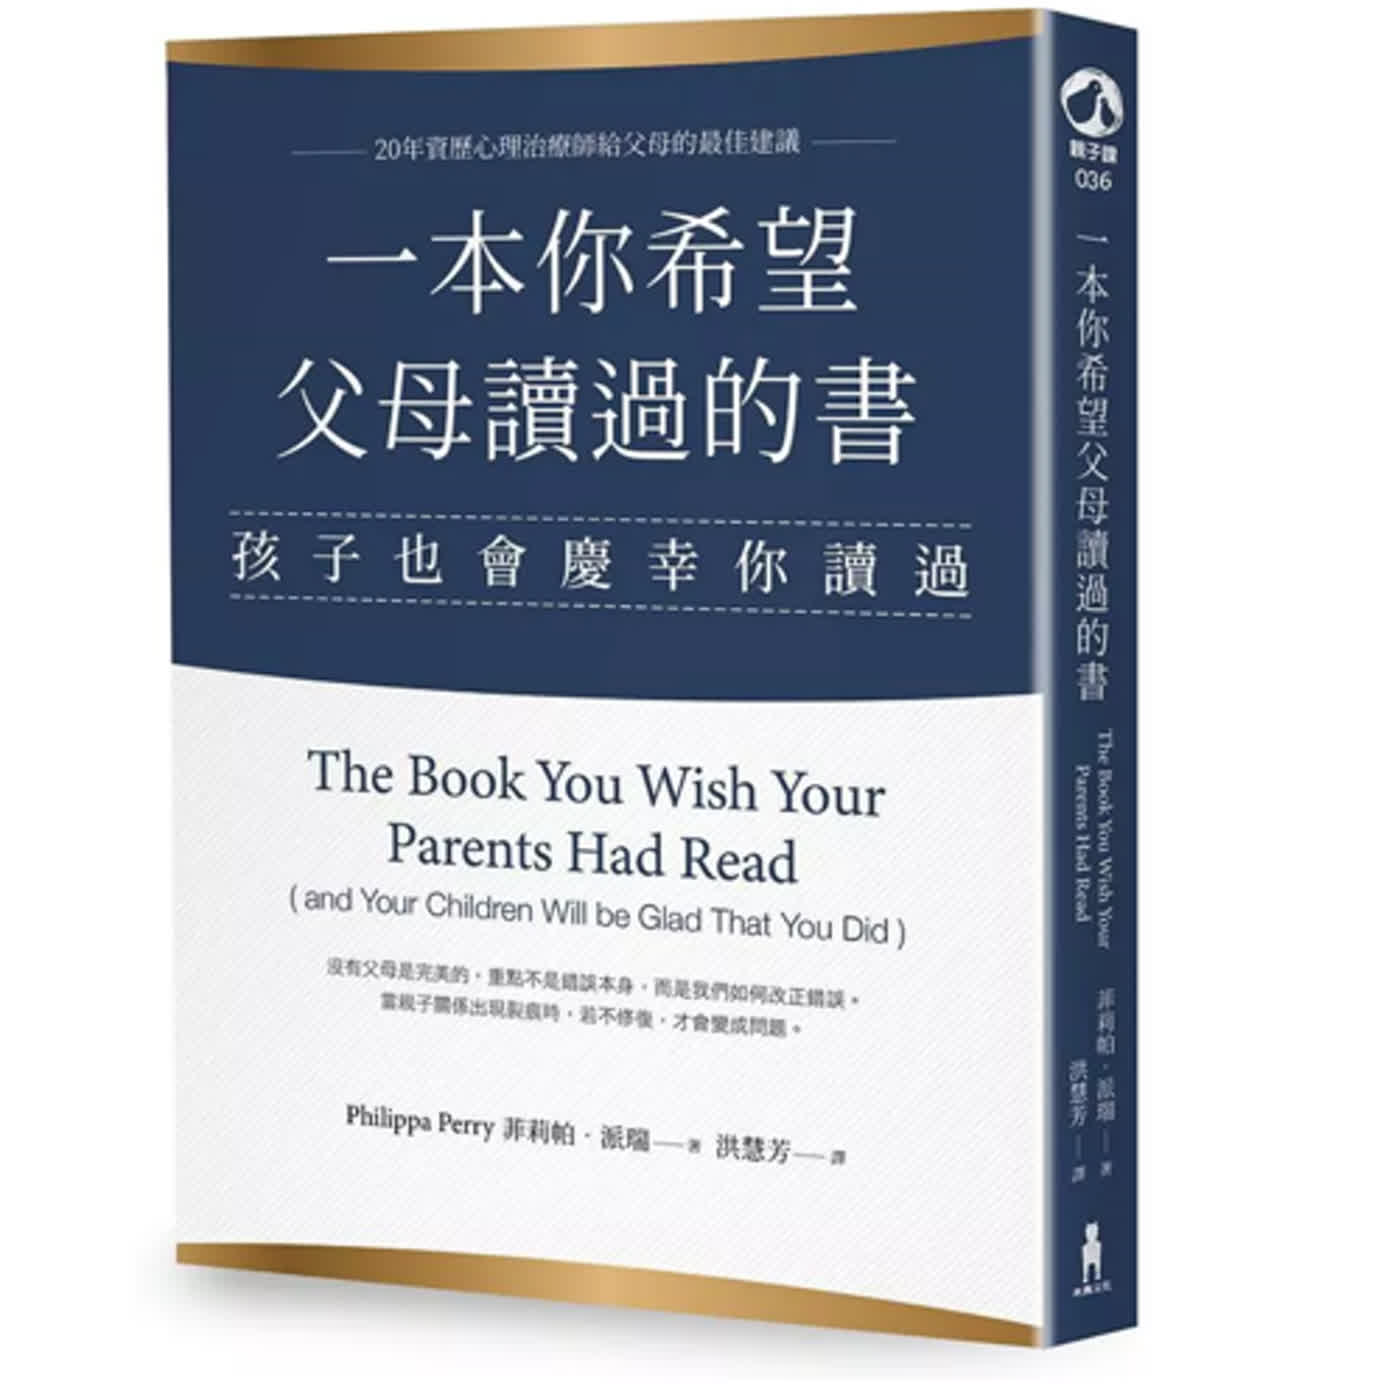 EP.41 一本你希望父母讀過的書(孩子也會慶幸你讀過) | 這就是書名~首次讀書心得分享